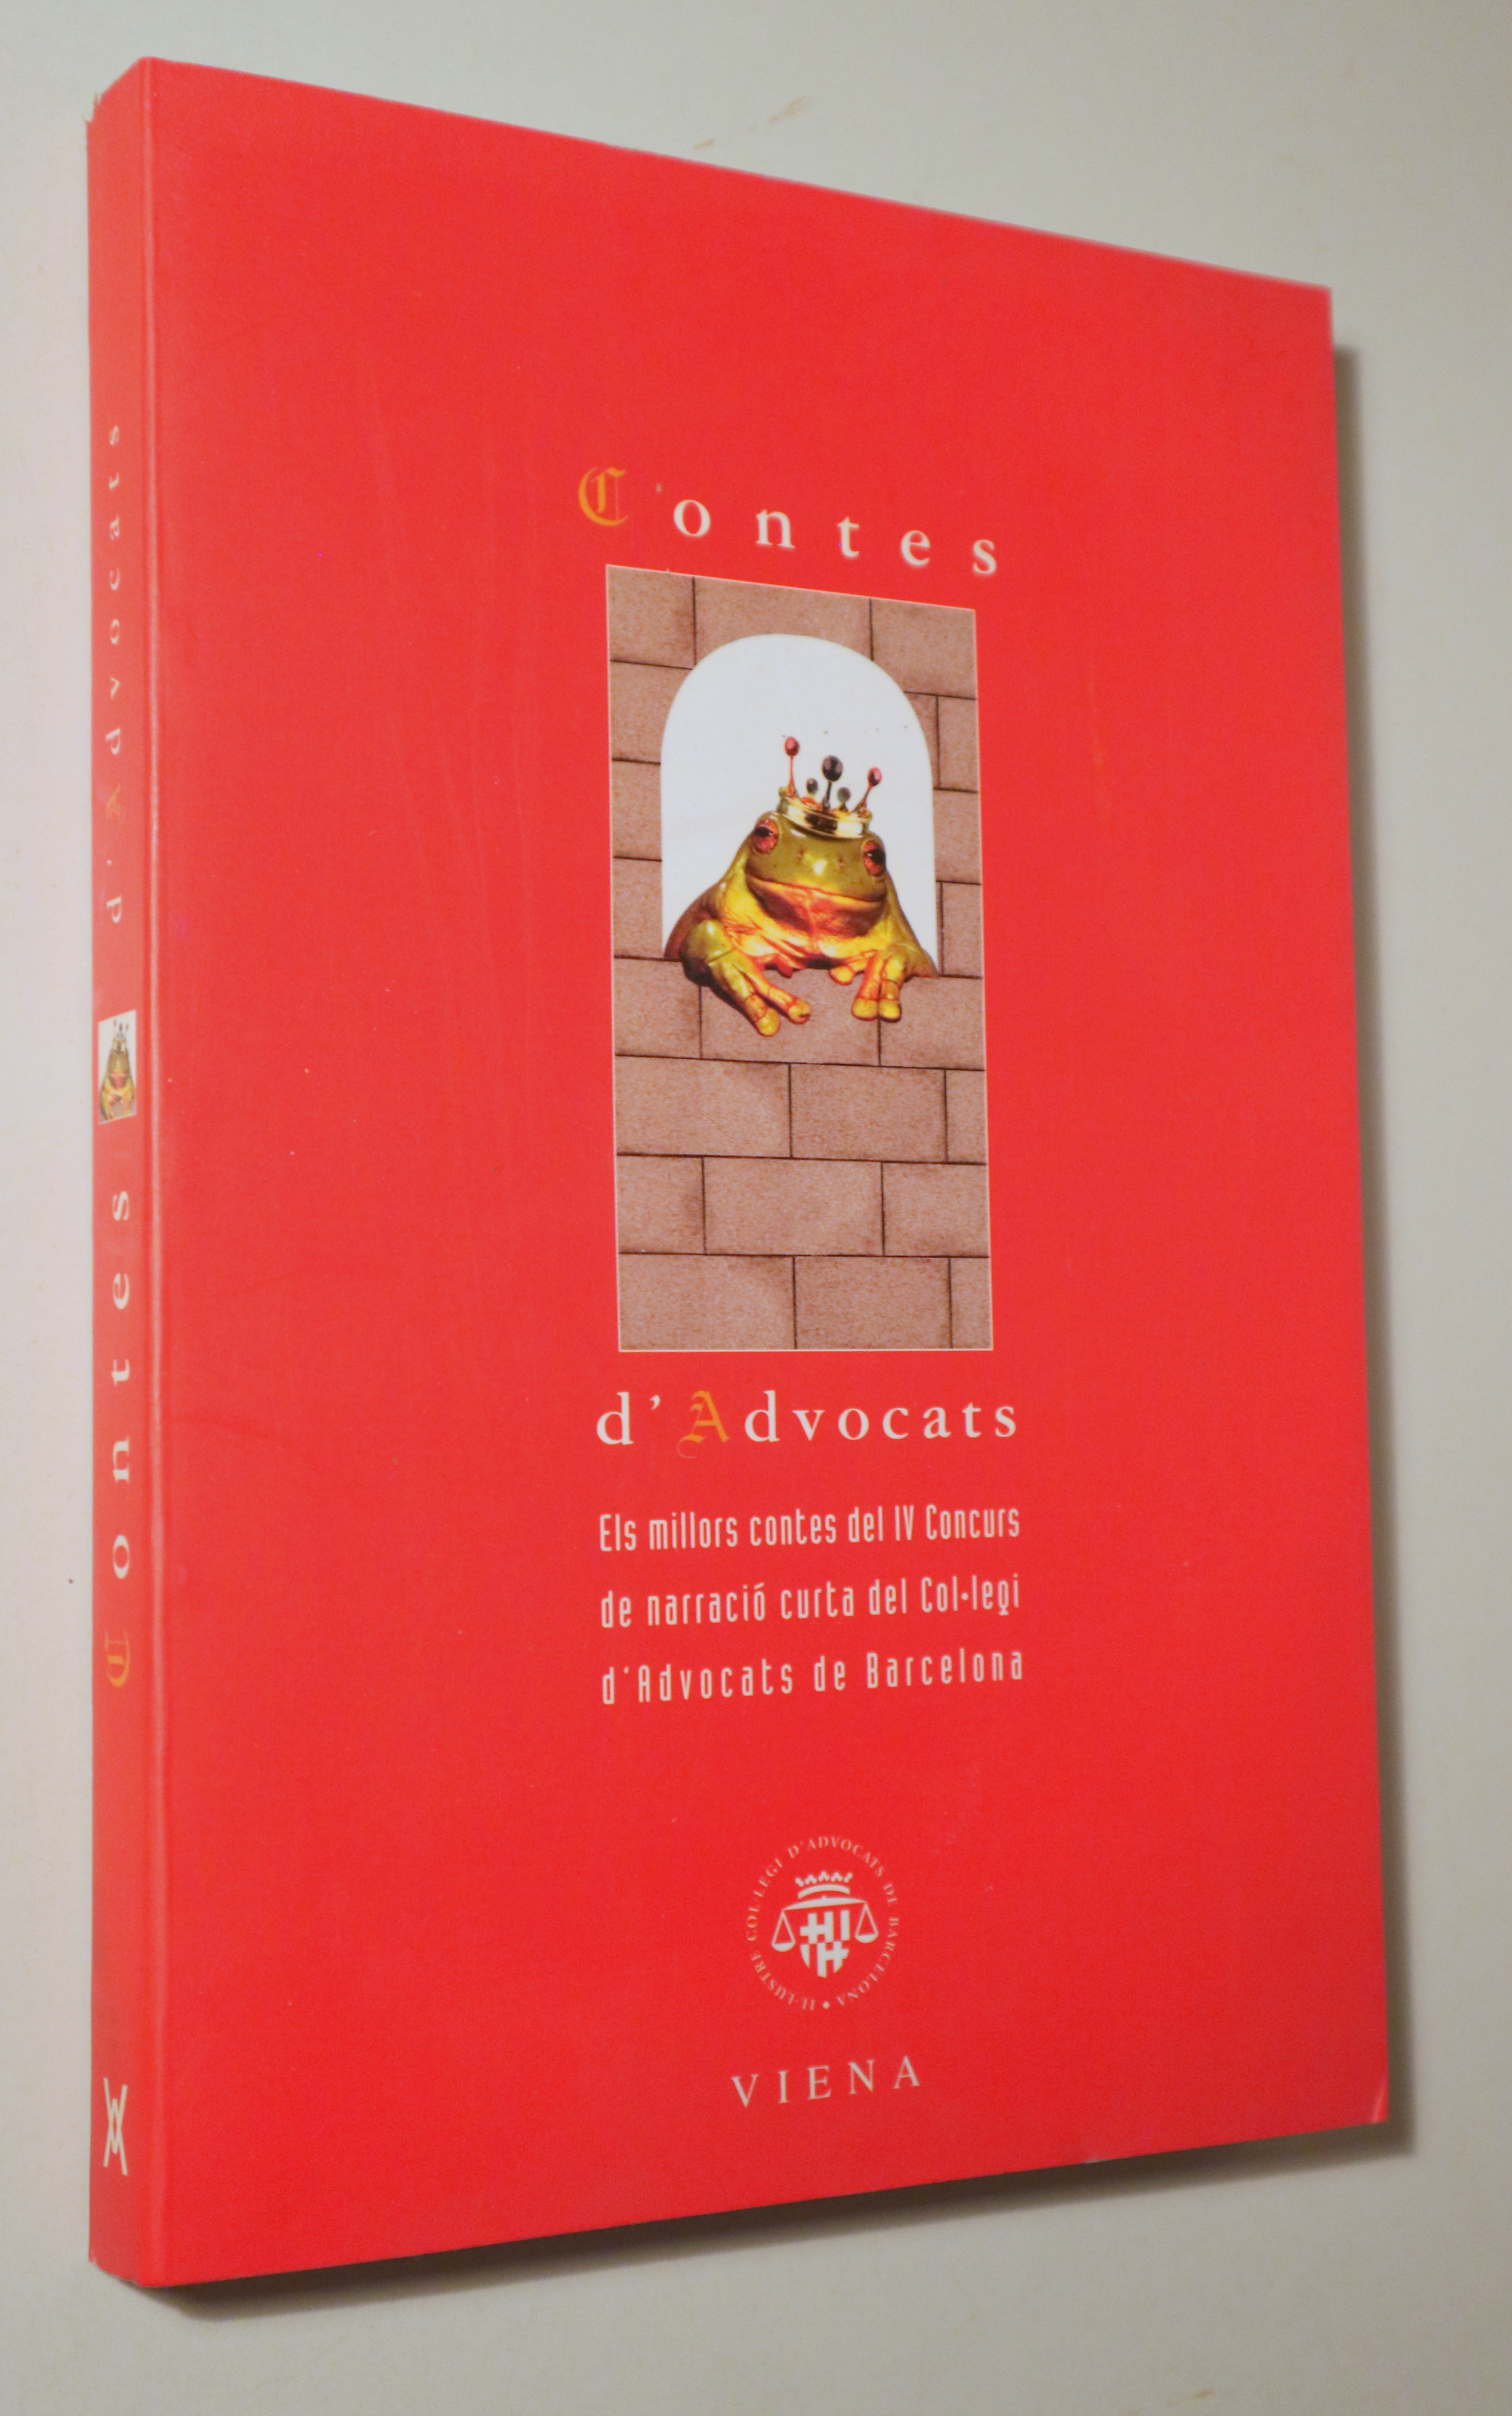 CONTES D'ADVOCATS. Els millors contes del IV concurs del Col·legi d'Advocats - Barcelona 2003